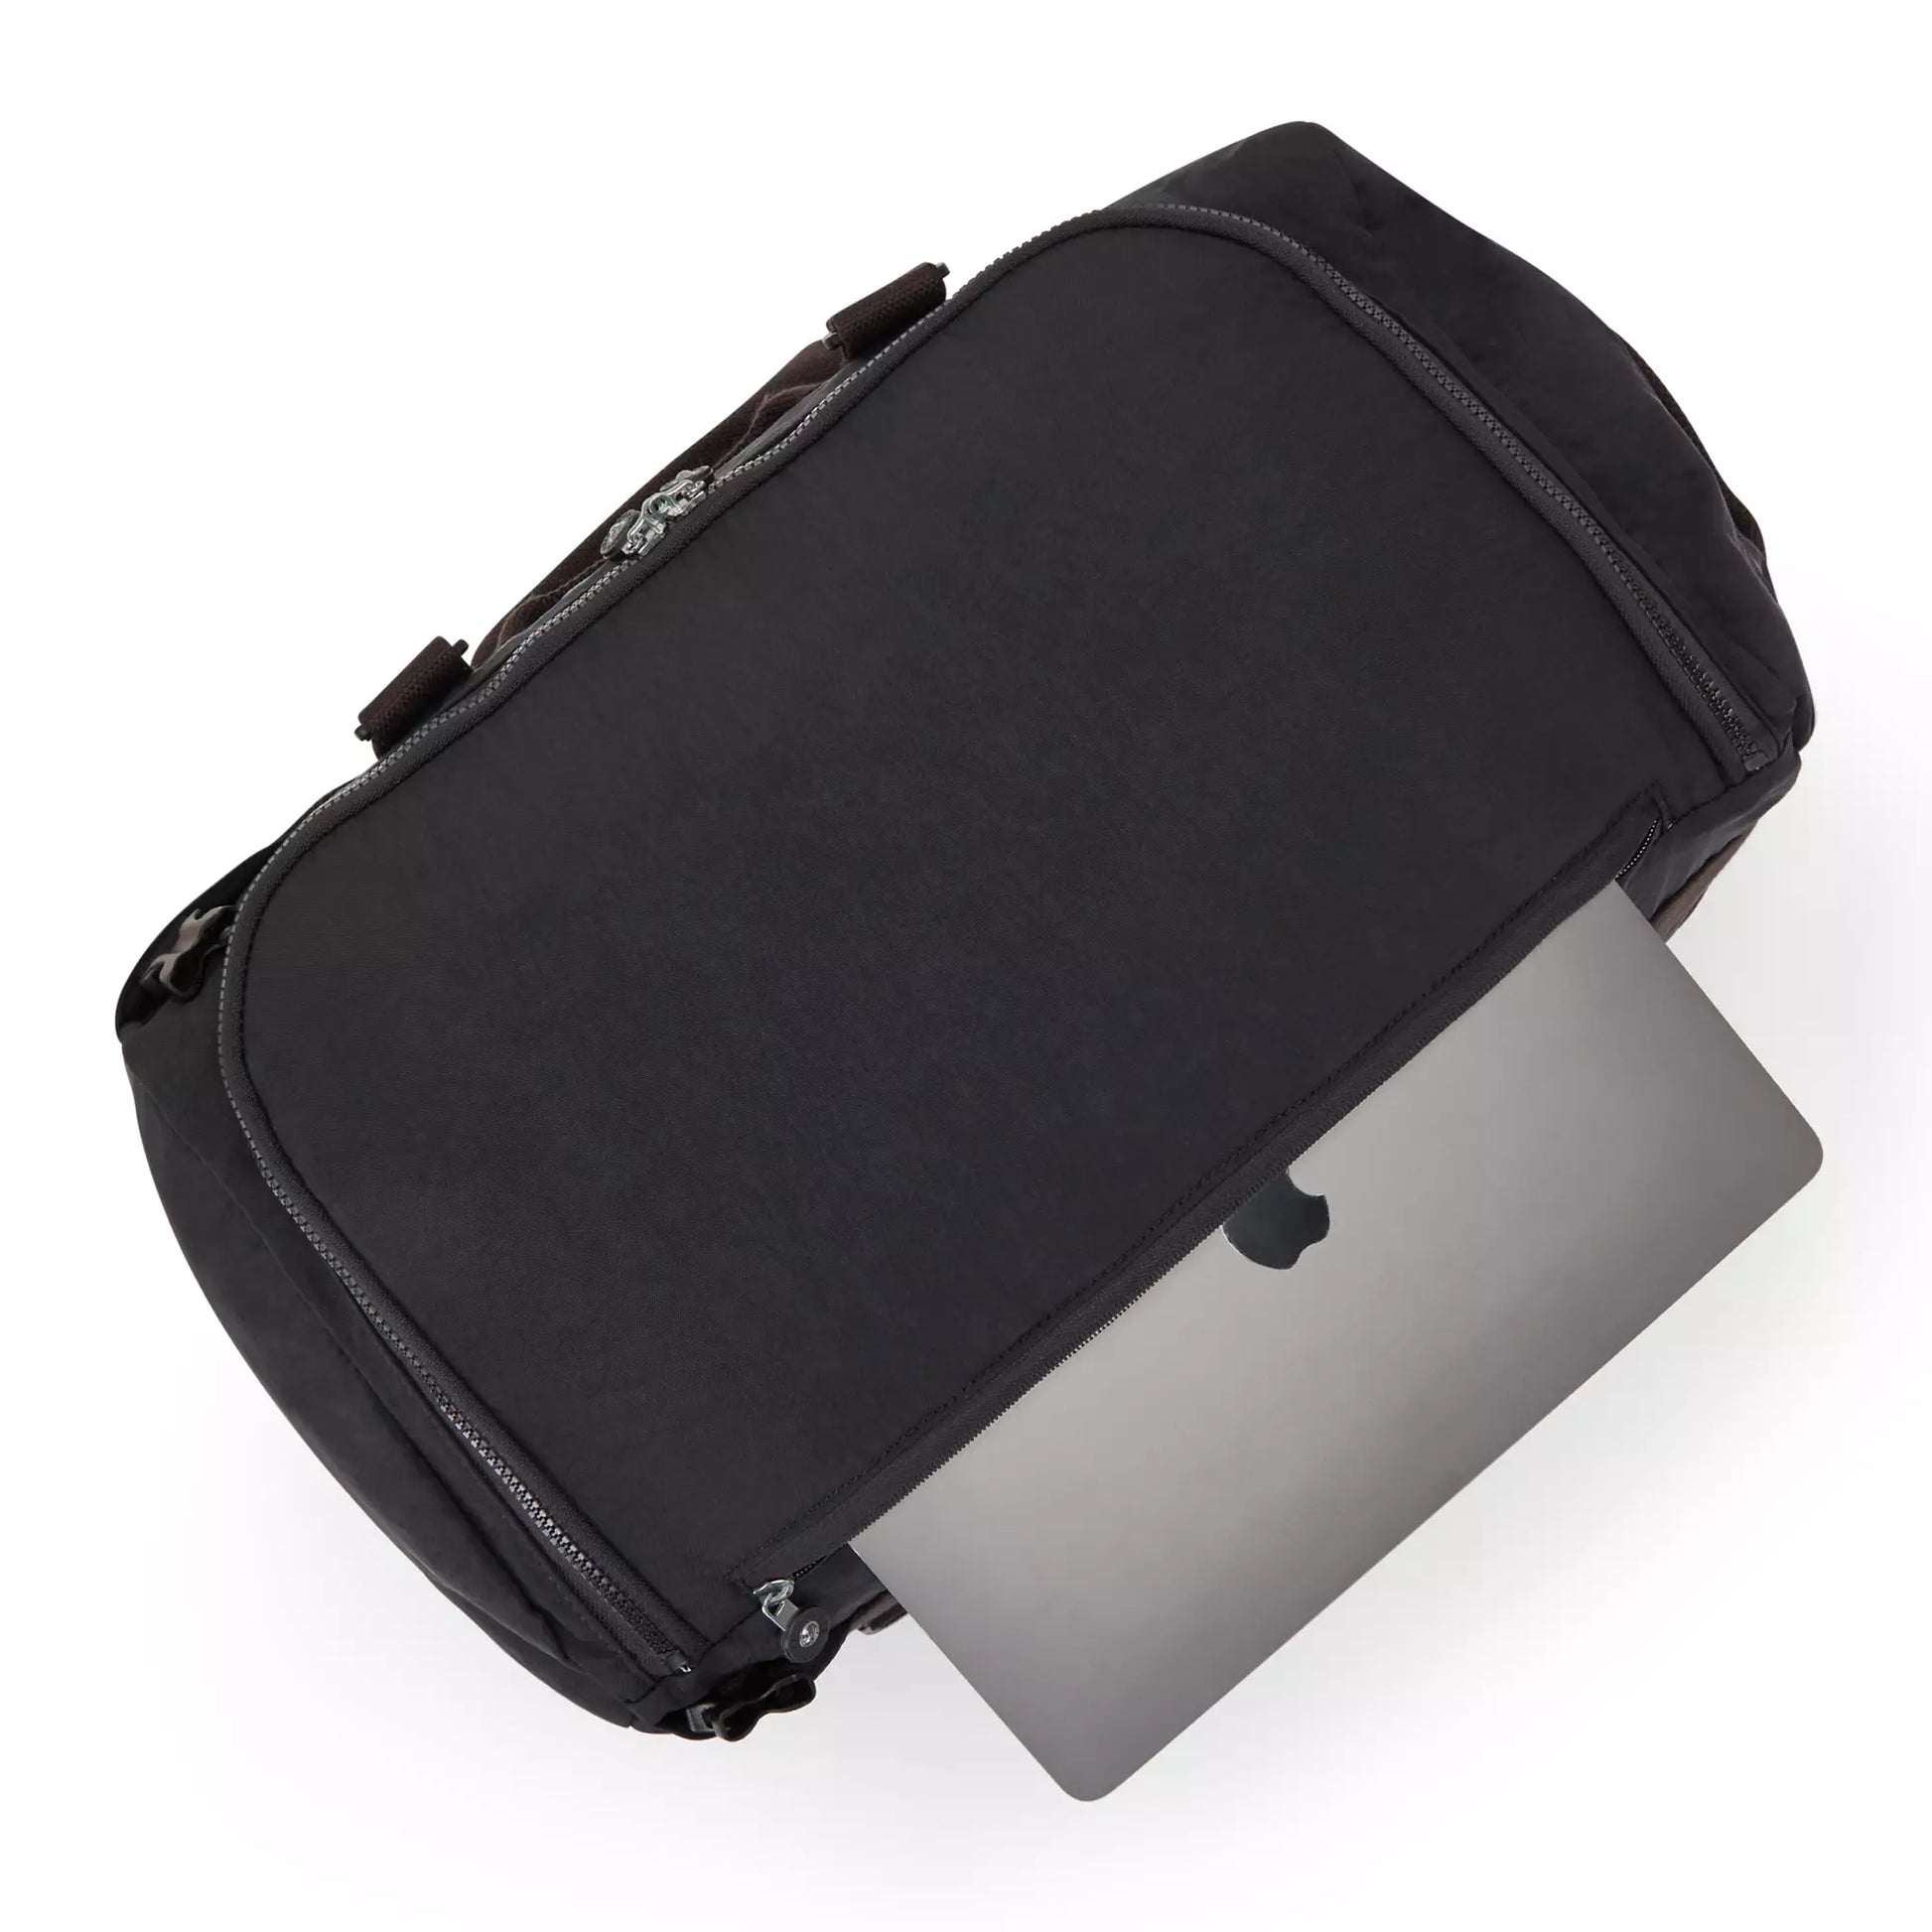 Kipling Jonis Small Laptop Duffle Backpack - Black Noir